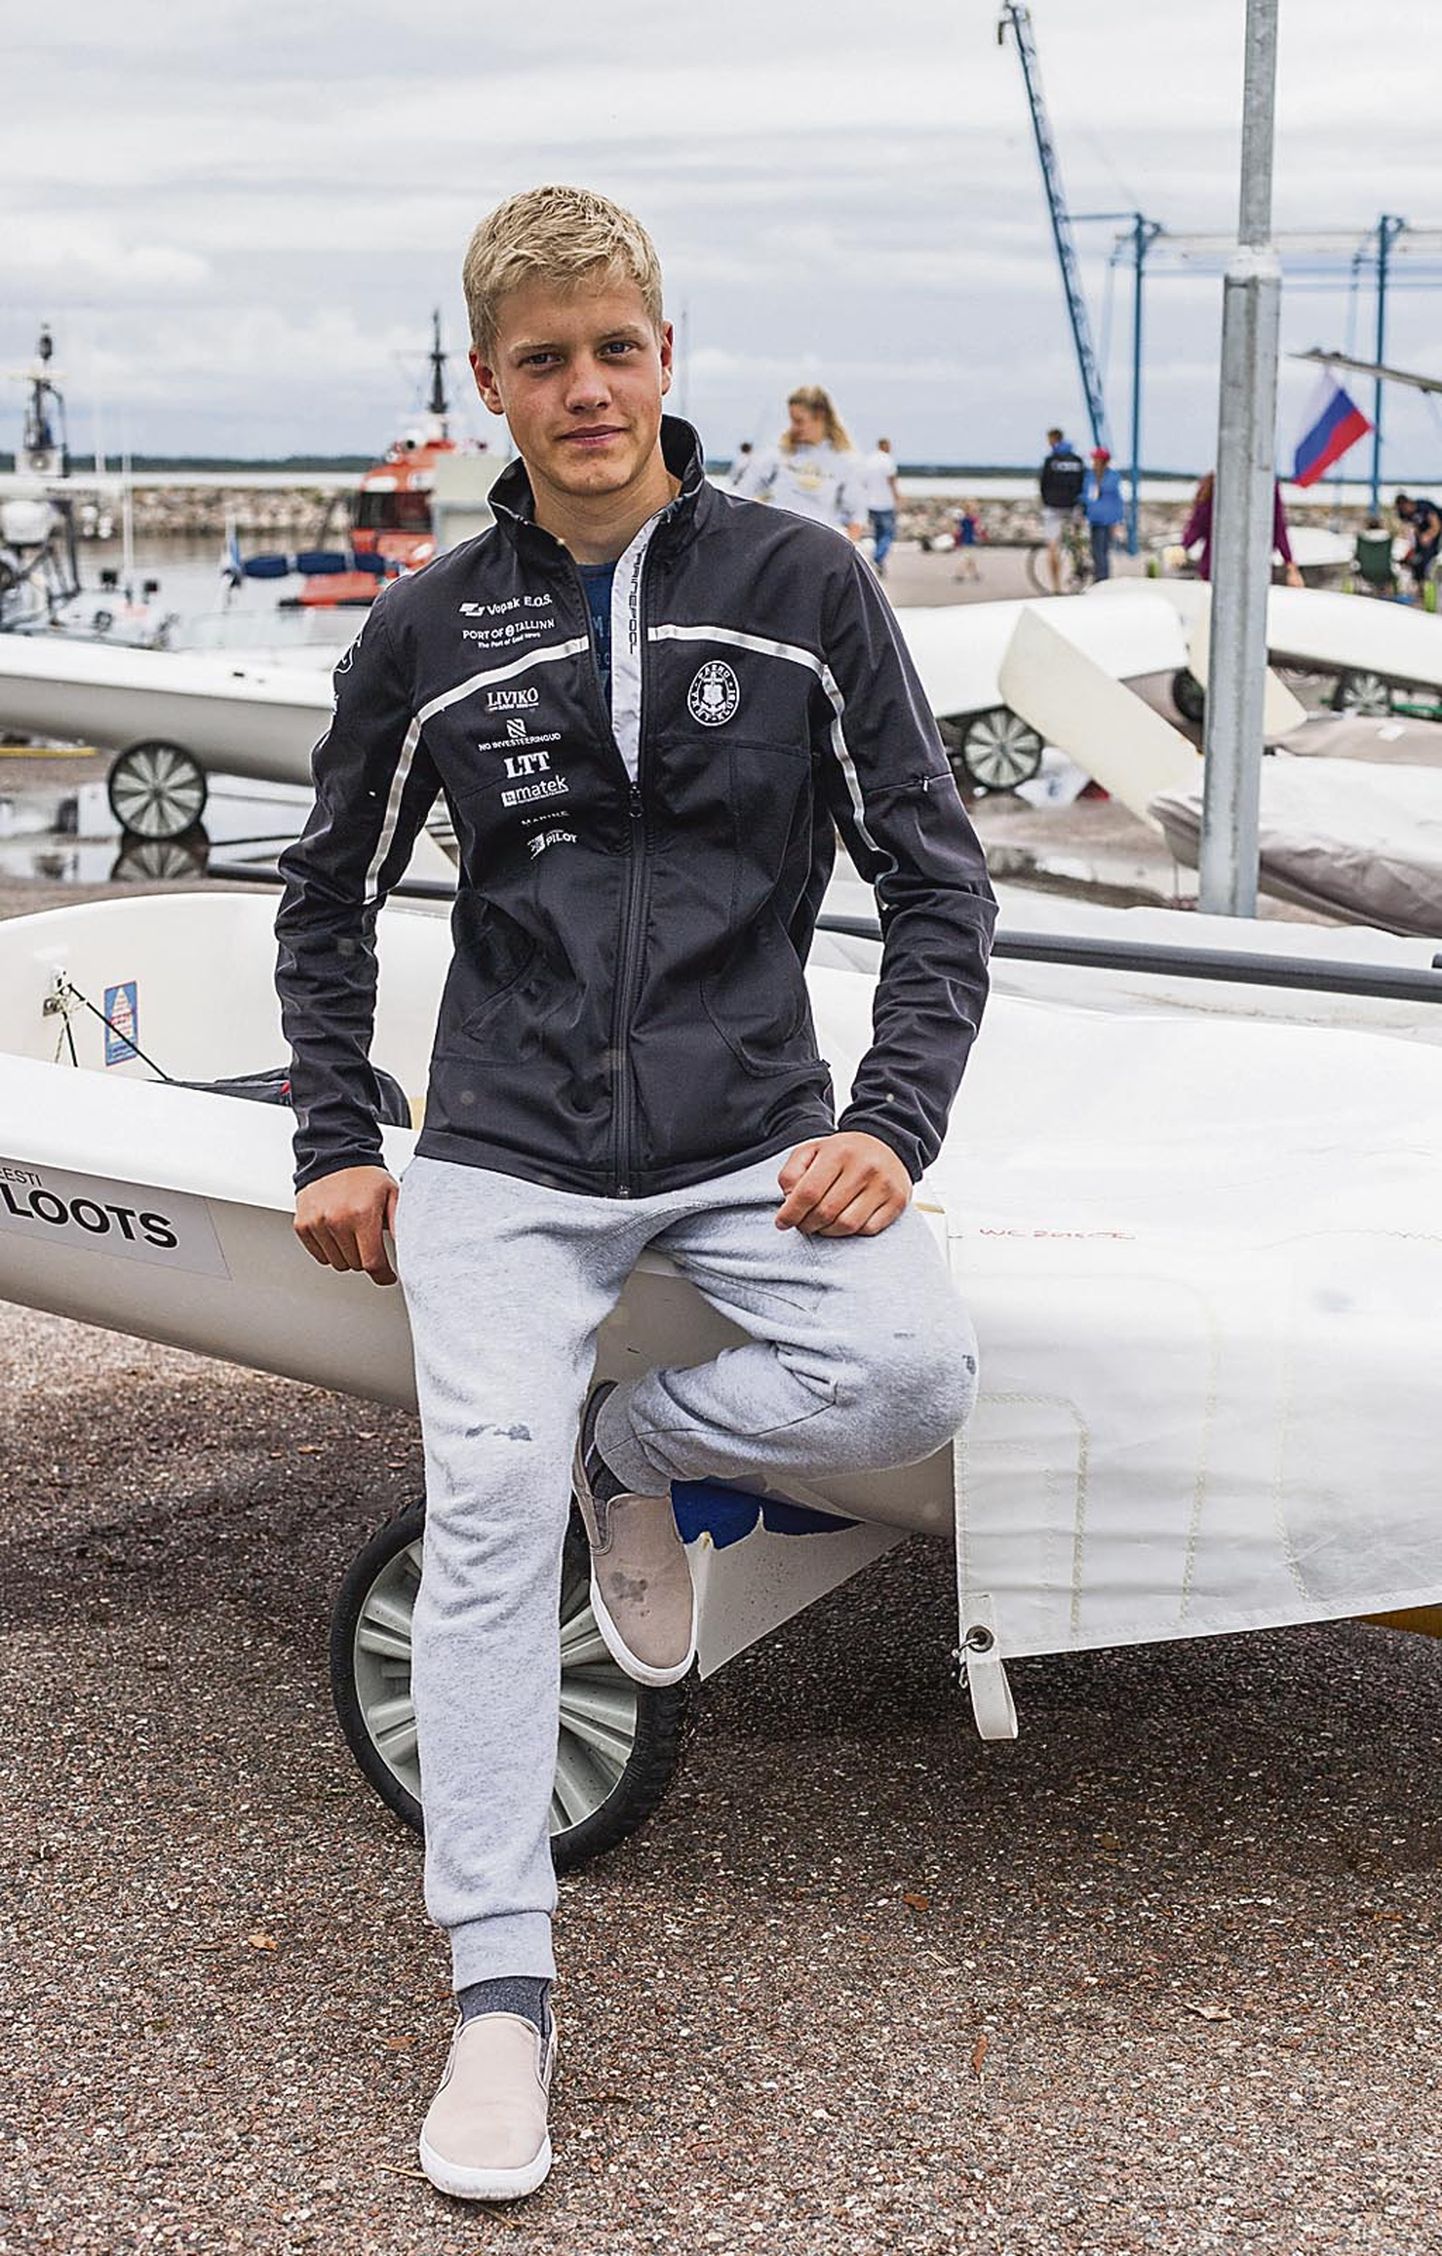 16aastane purjetaja Keith Luur on saavutanud suurepäraseid tulemusi nii mereveel kui jää peal võisteldes.